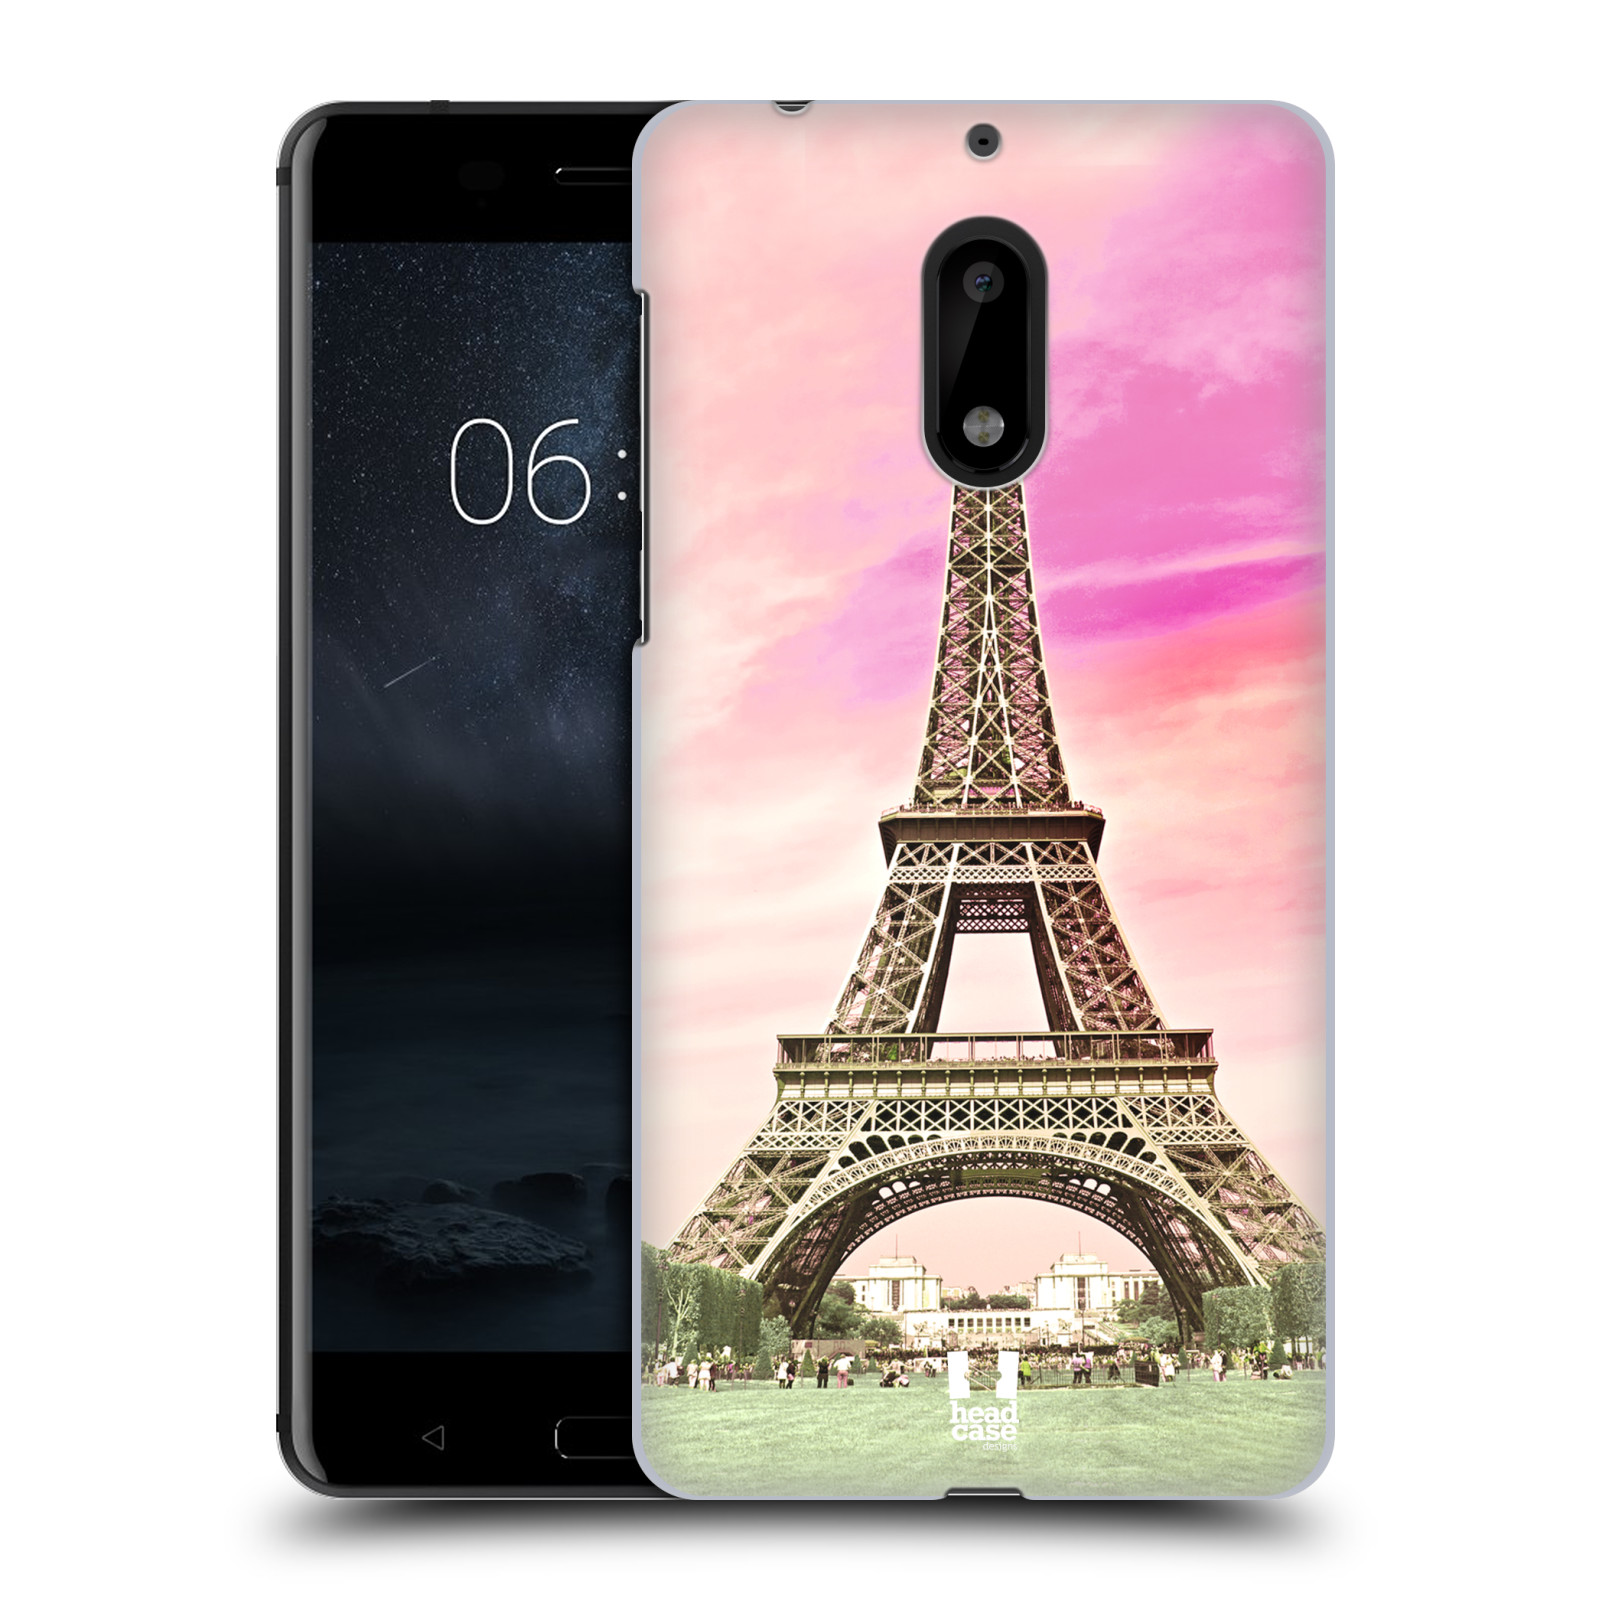 Pouzdro na mobil Nokia 6 - HEAD CASE - historická místa Eiffelova věž Paříž